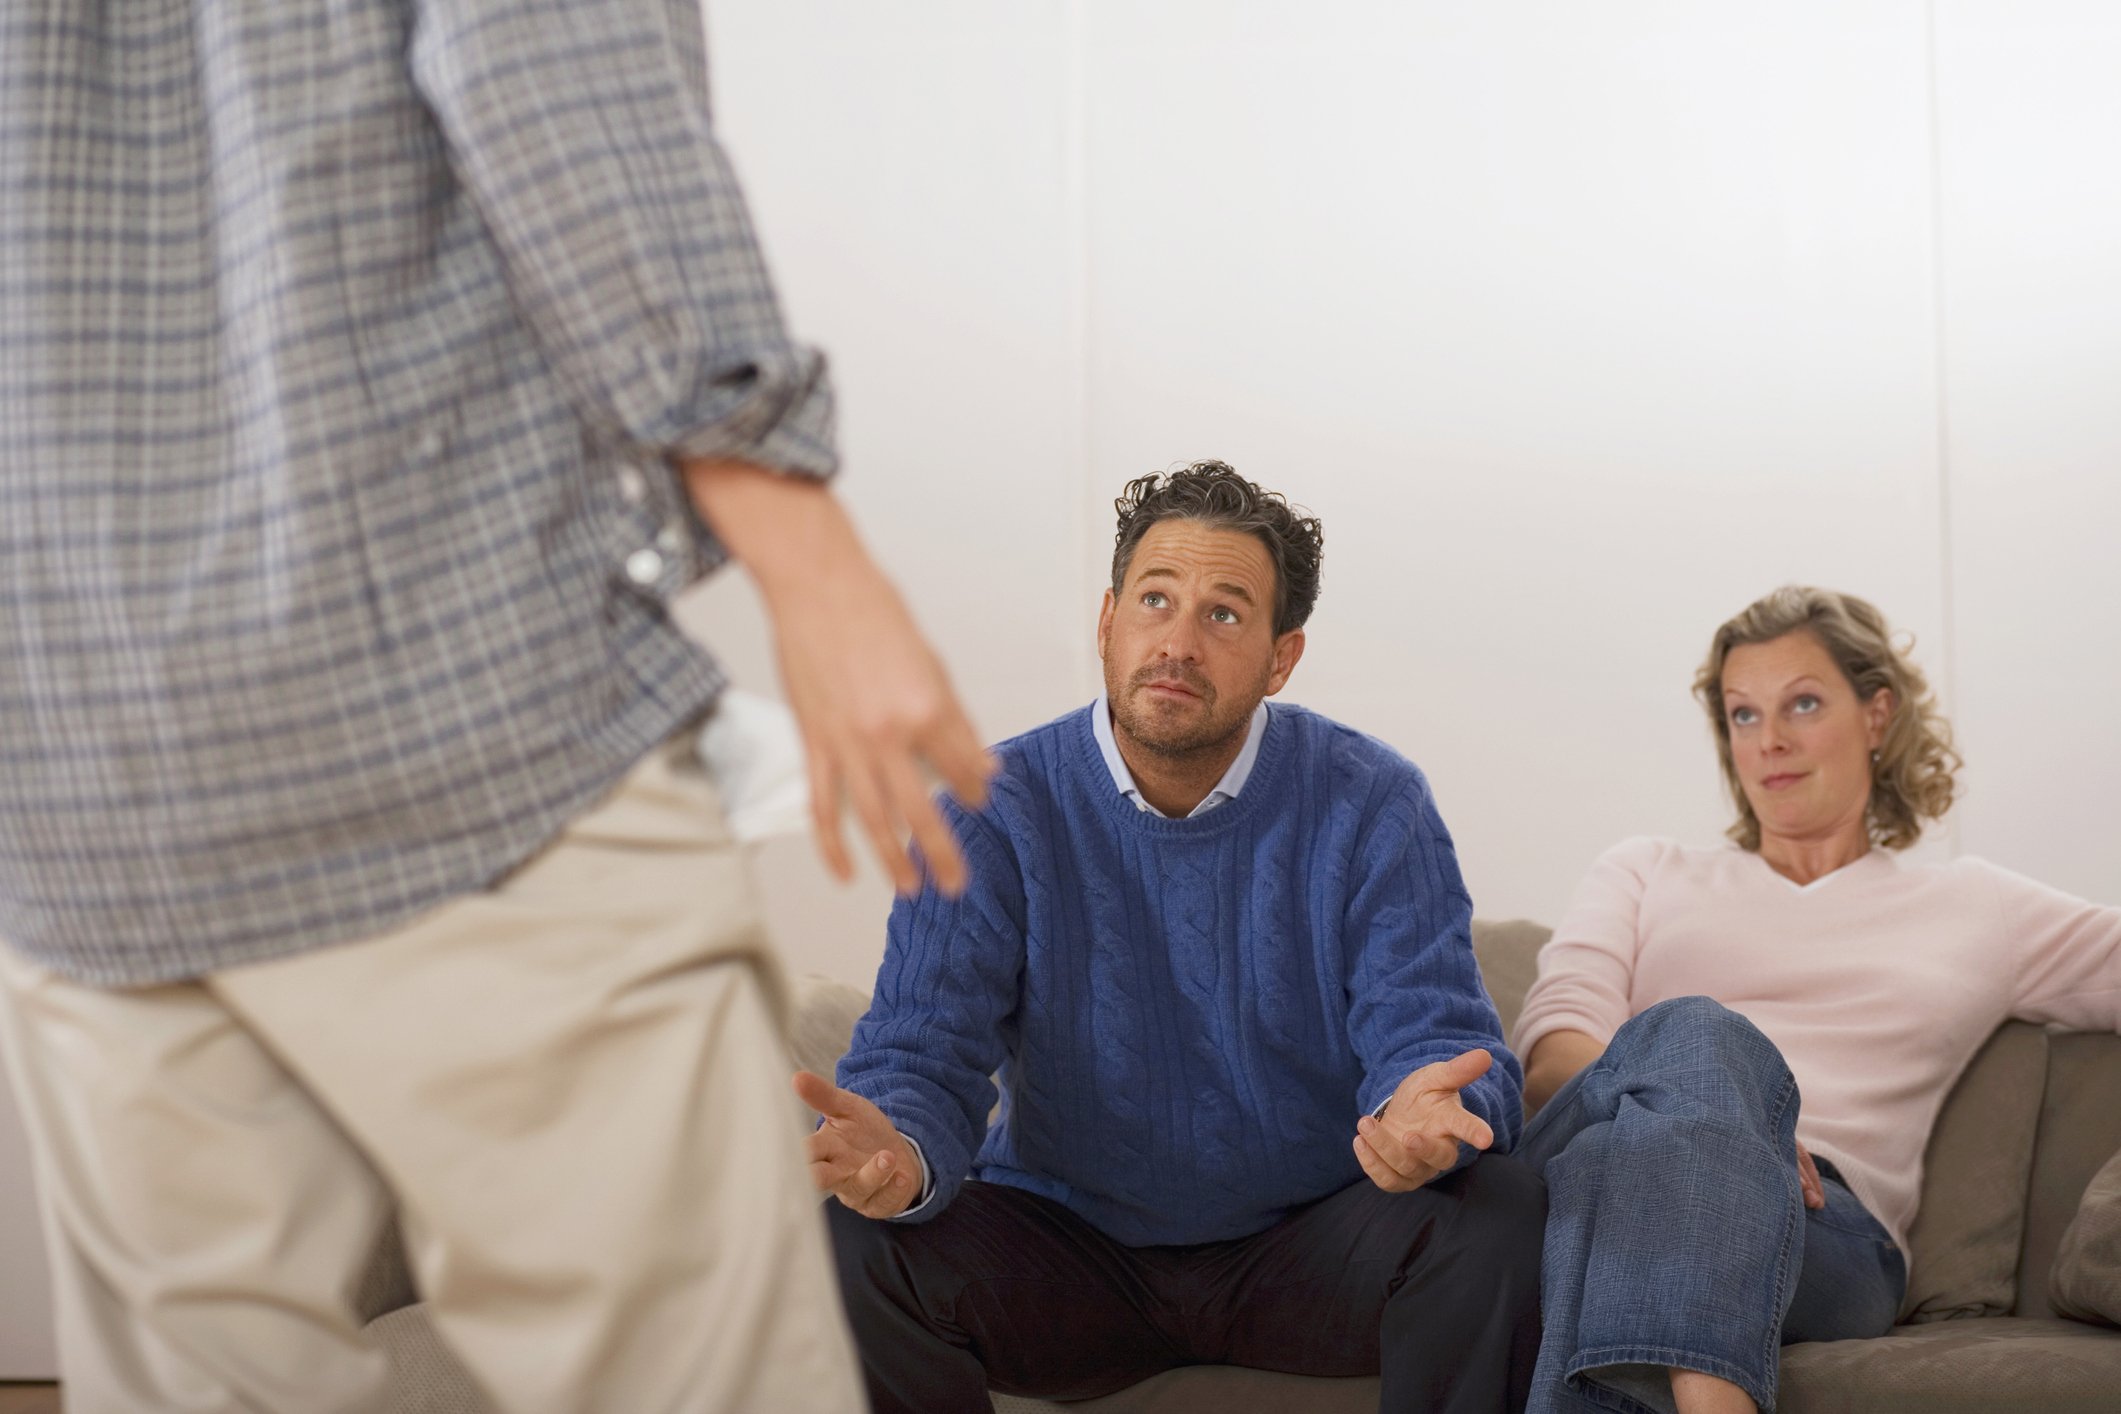 Eltern diskutieren mit Sohn, Rückansicht | Quelle: Getty Images